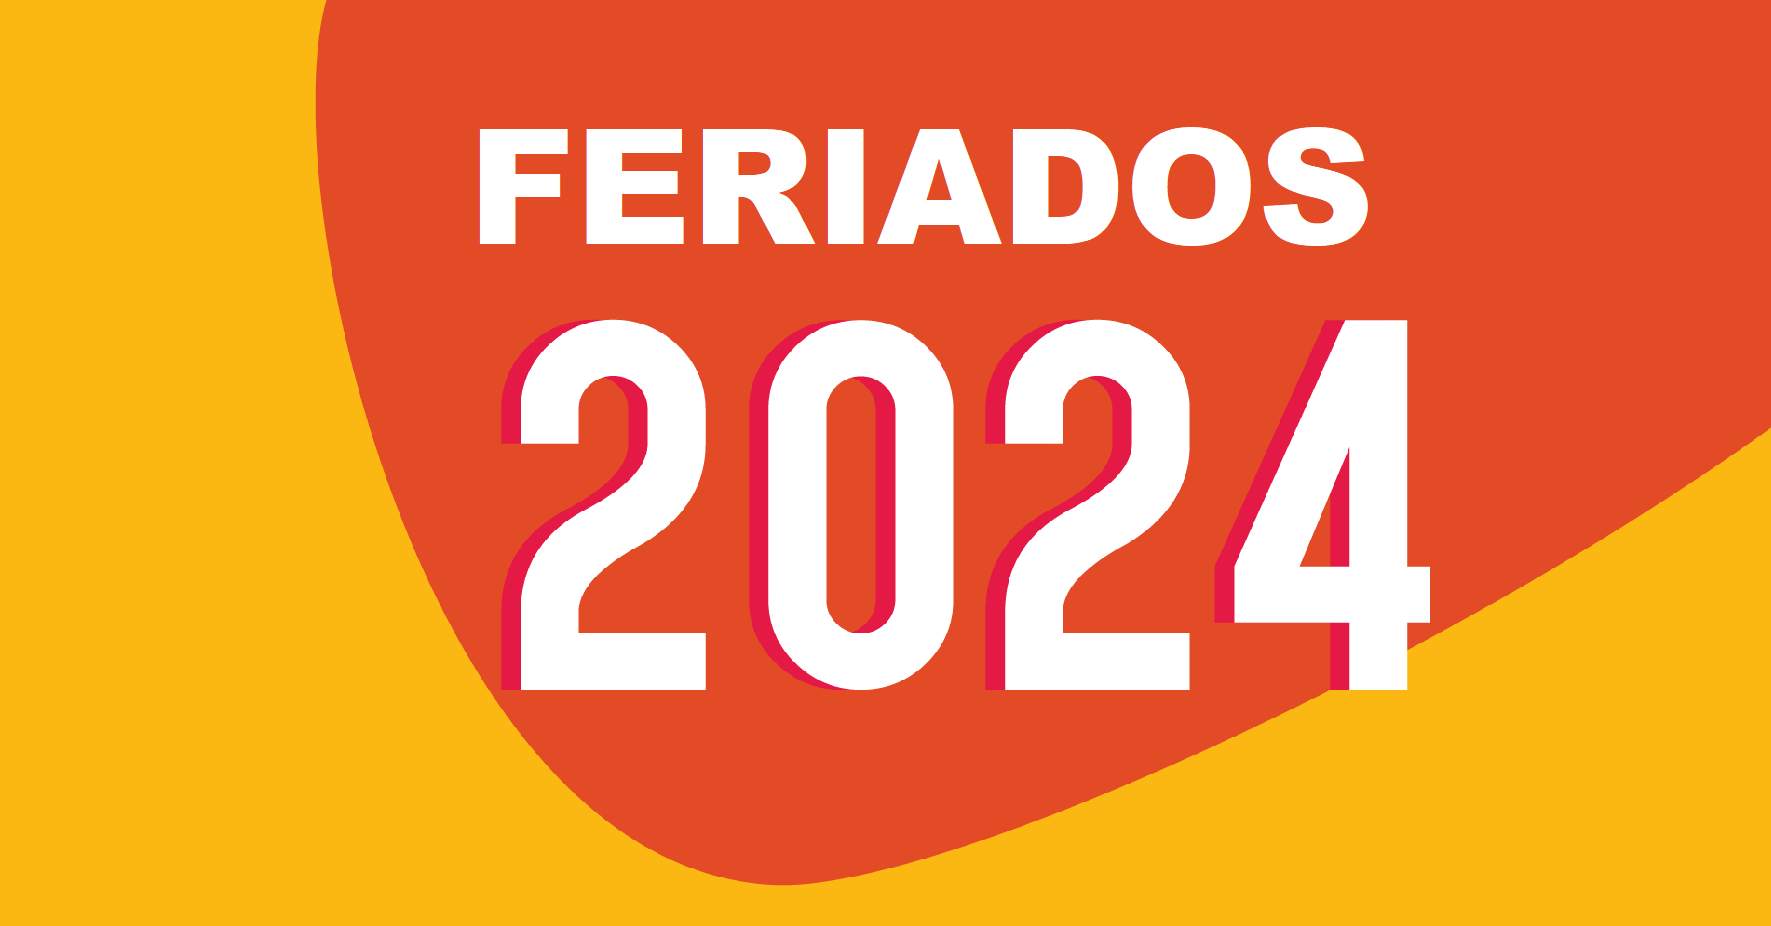 FERIADOS 2024 LISTA DE FERIADOS NACIONAIS DE 2024 DIGITEI